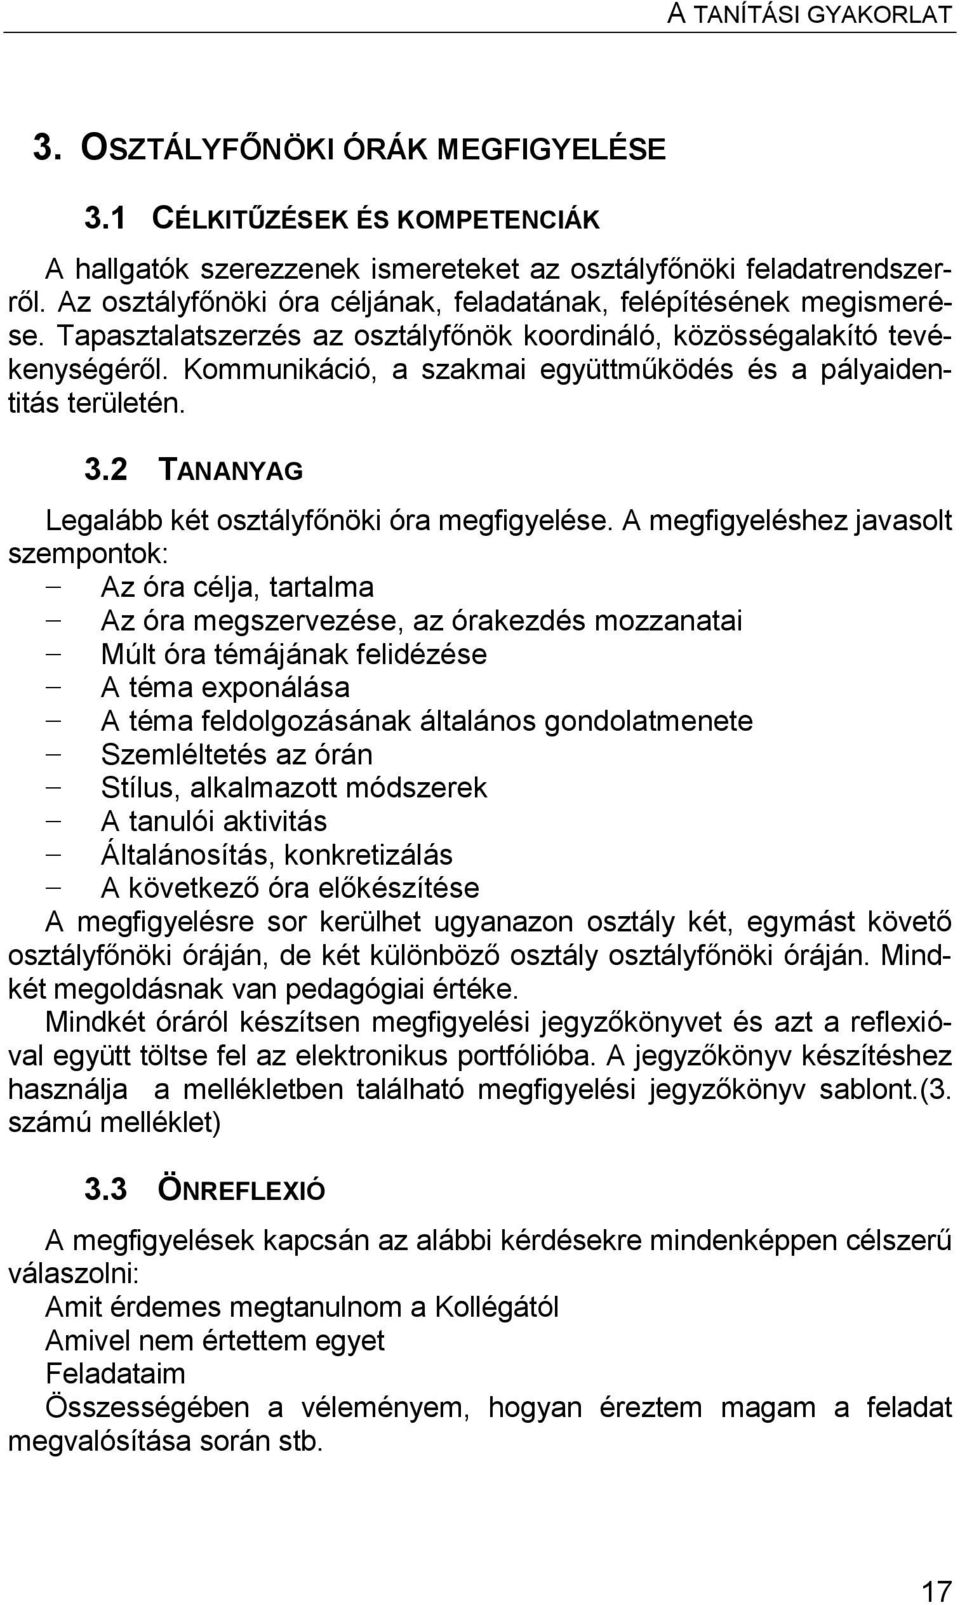 A tanítási gyakorlat. Magyar István Sándor József - PDF Ingyenes letöltés